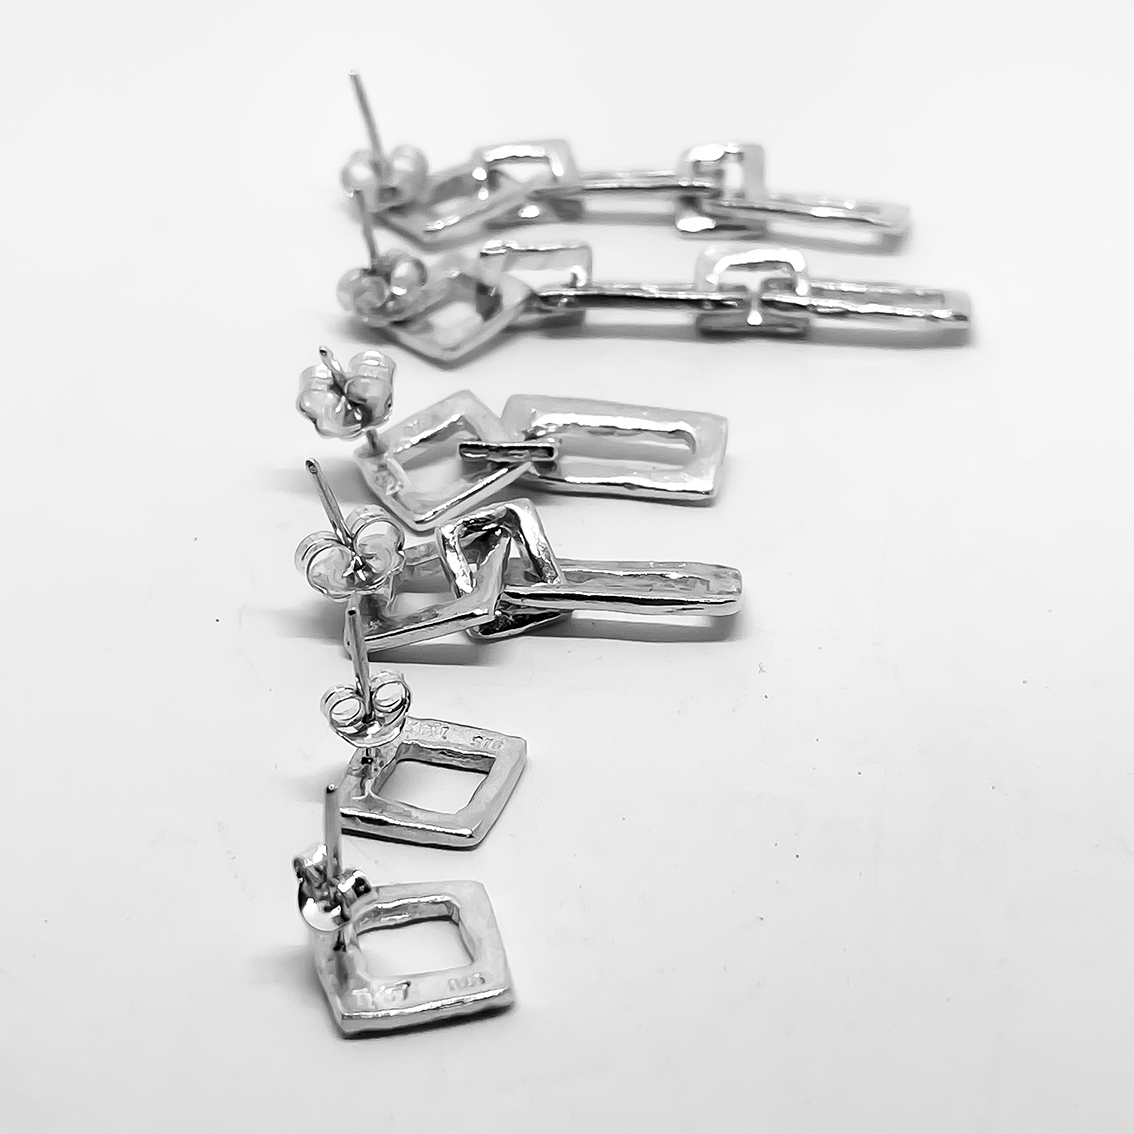 Modernist Earrings No. 4 - Geometric Cutout Drop Earrings in Sterling Silver